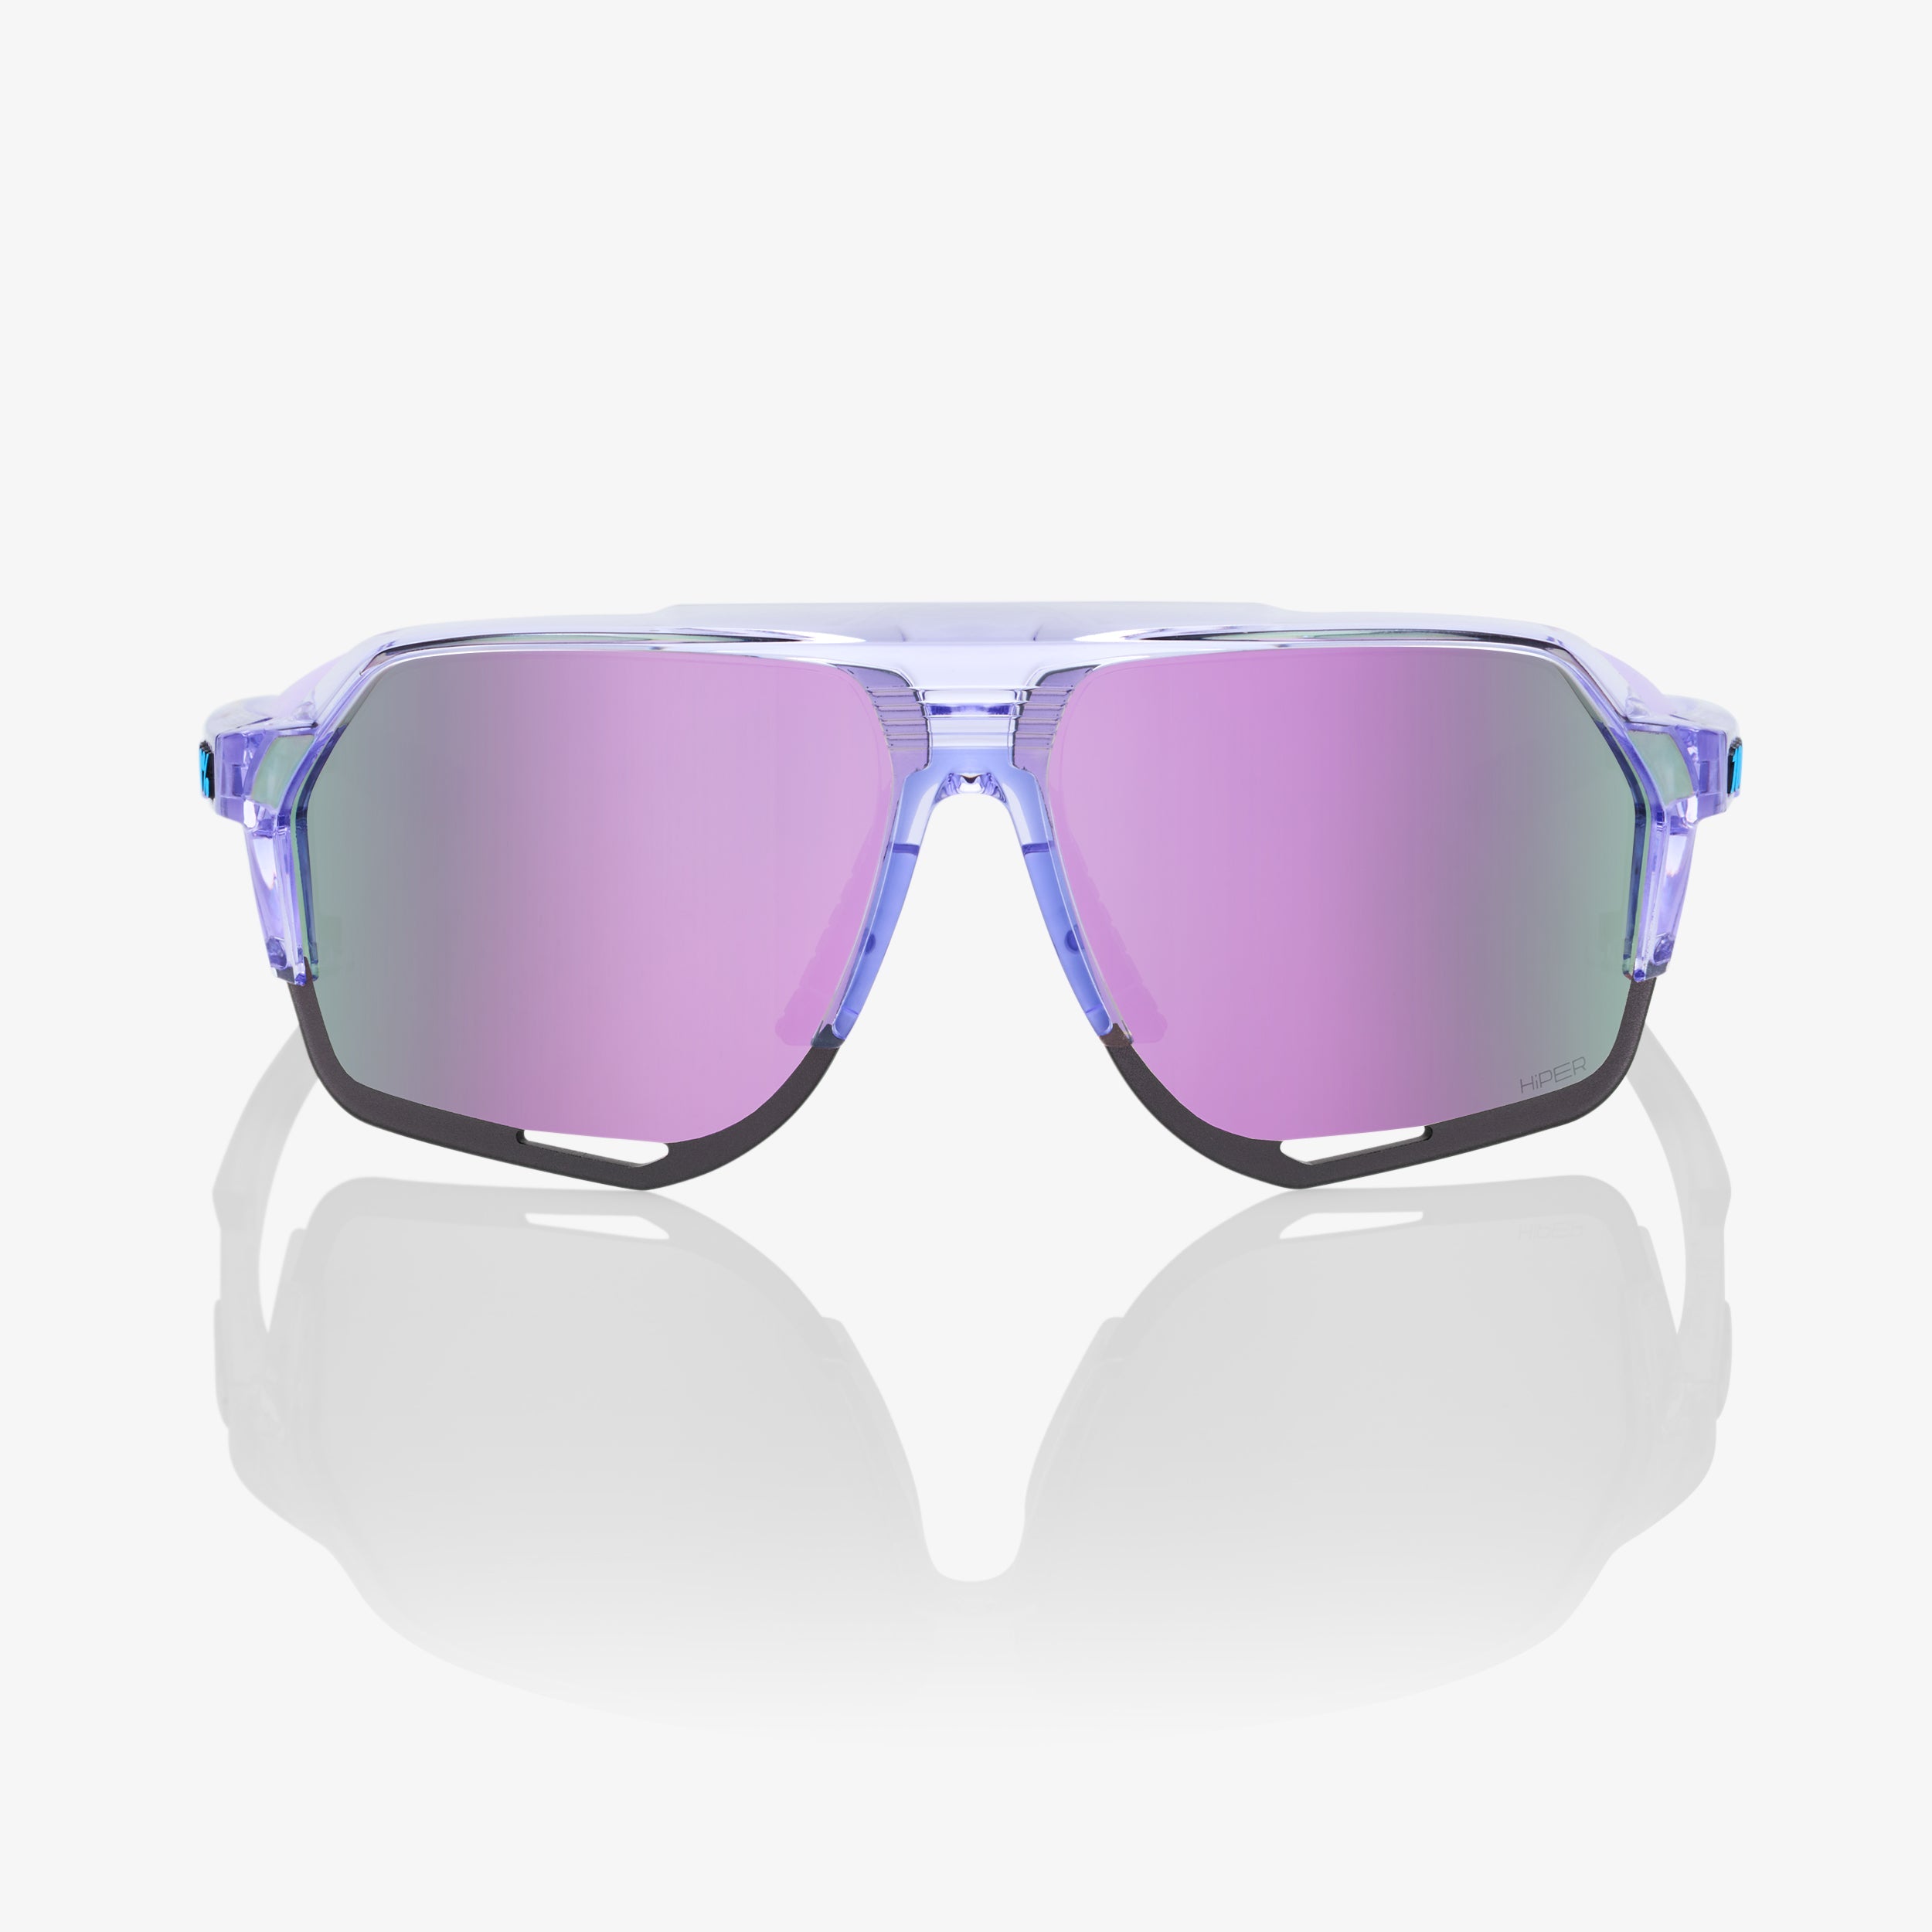 NORVIK™ - Polished Translucent Lavender - HiPER® Lavender Mirror Lens